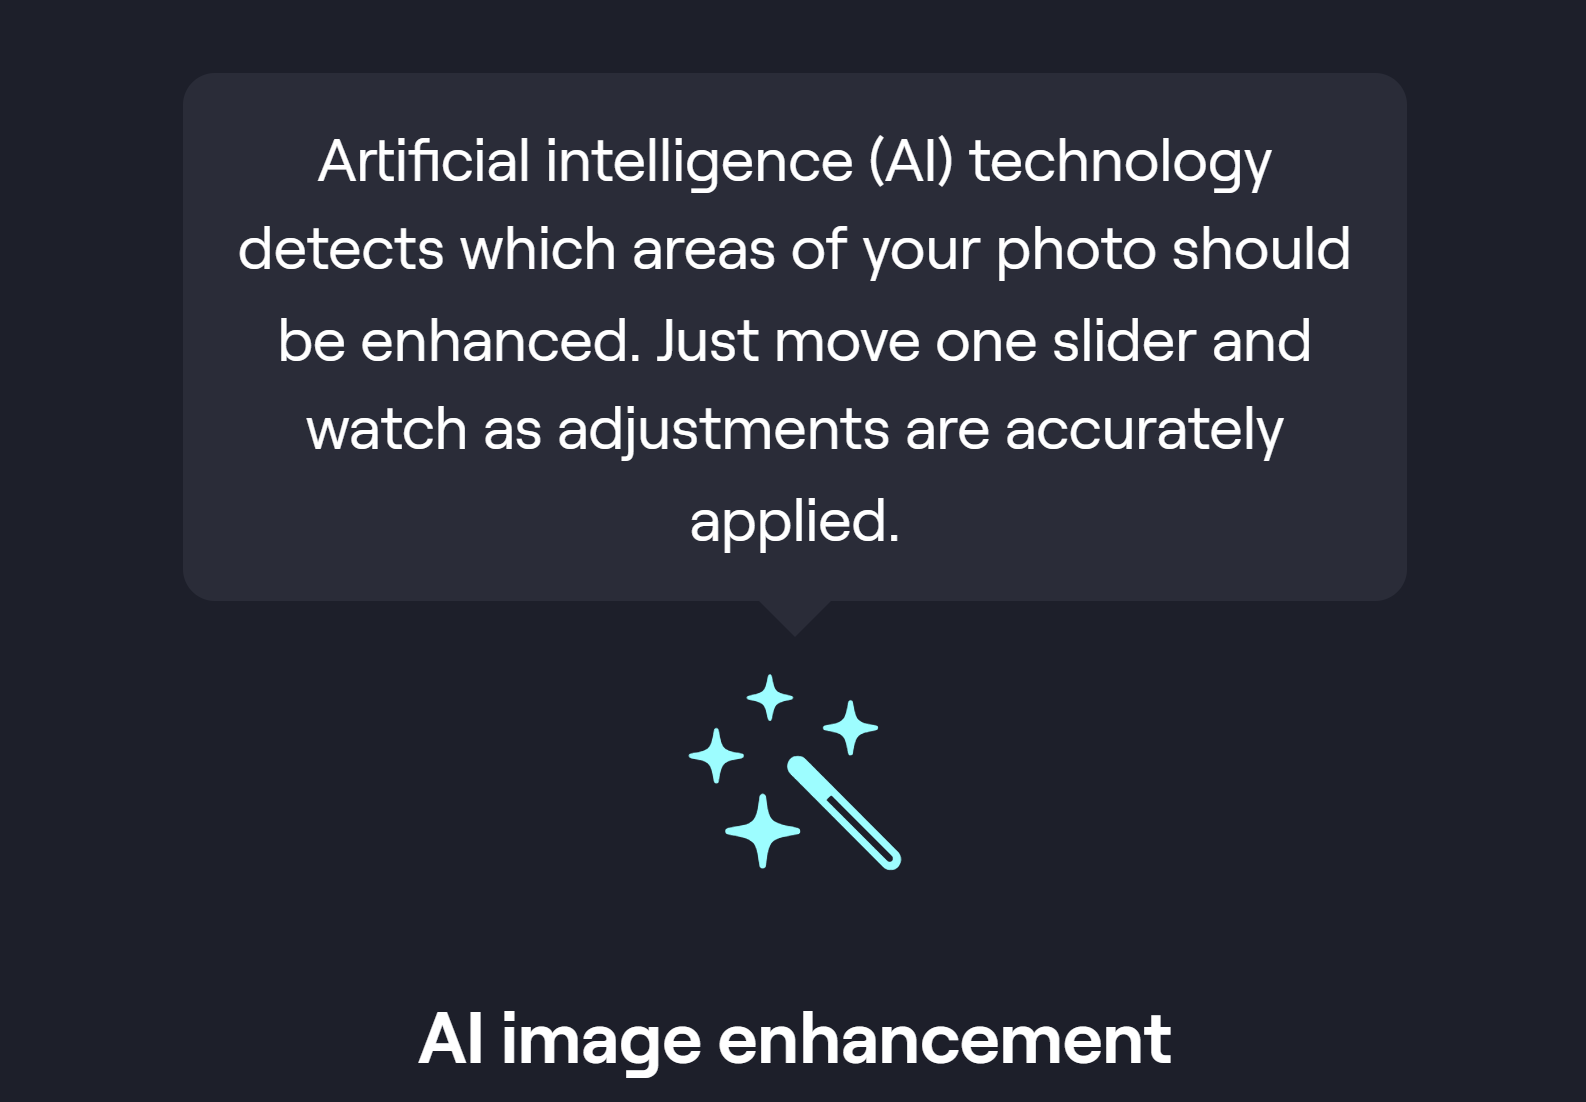 AI image enhancement